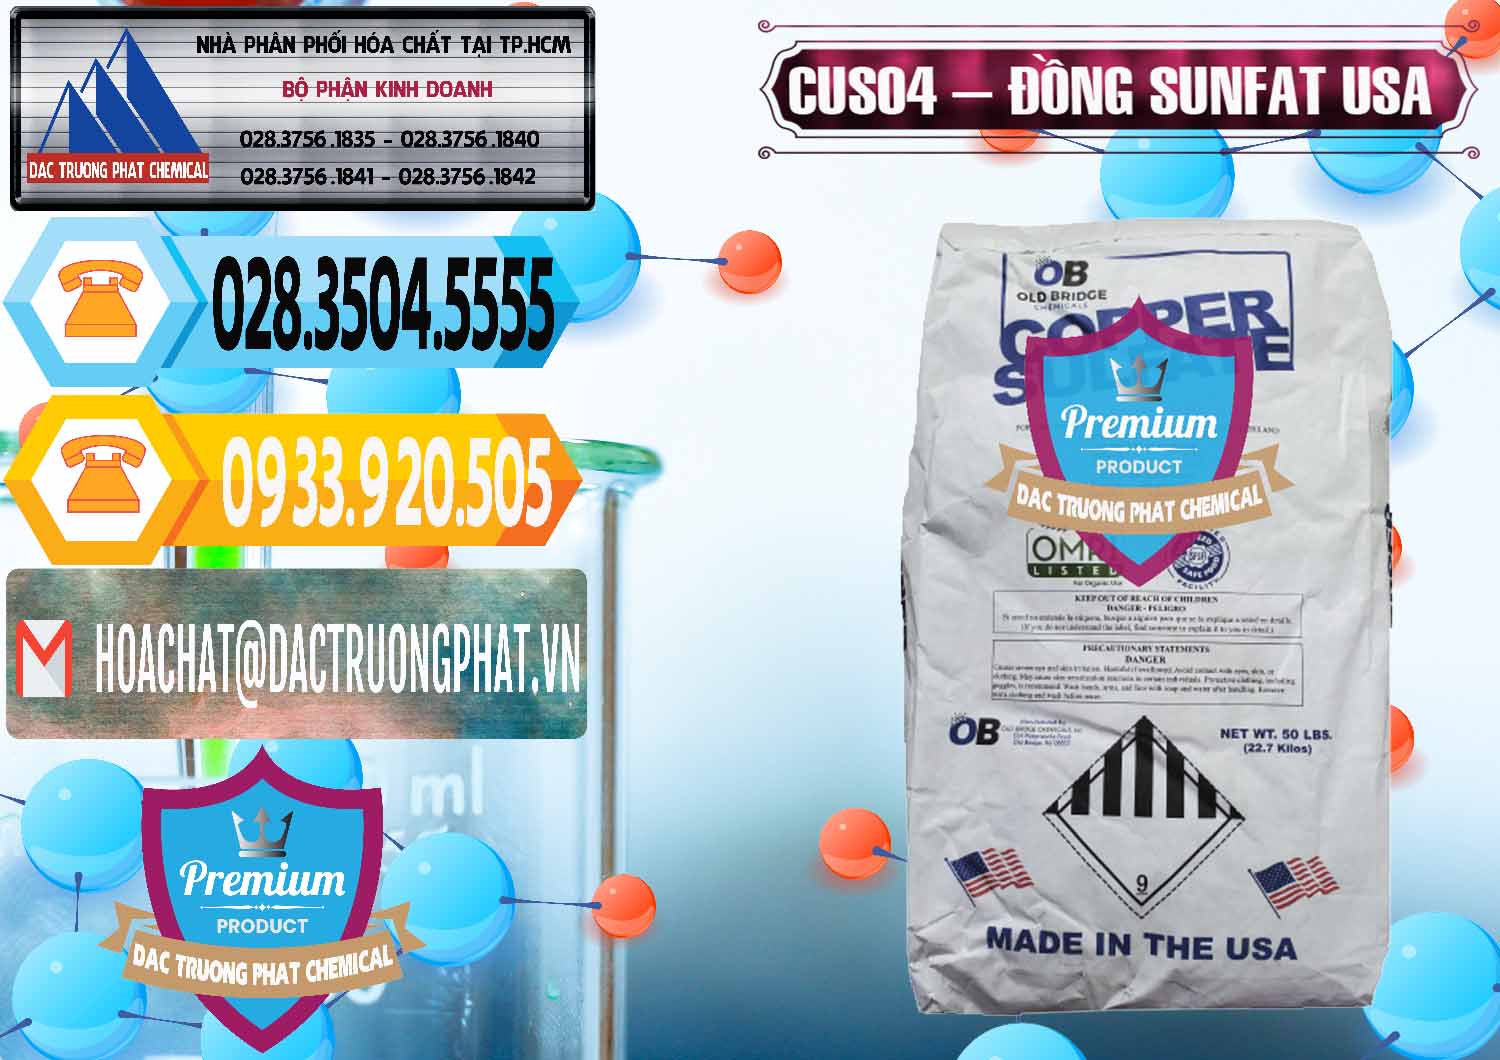 Công ty chuyên cung ứng ( bán ) CuSO4 – Đồng Sunfat Mỹ USA - 0479 - Cung ứng & phân phối hóa chất tại TP.HCM - hoachattayrua.net